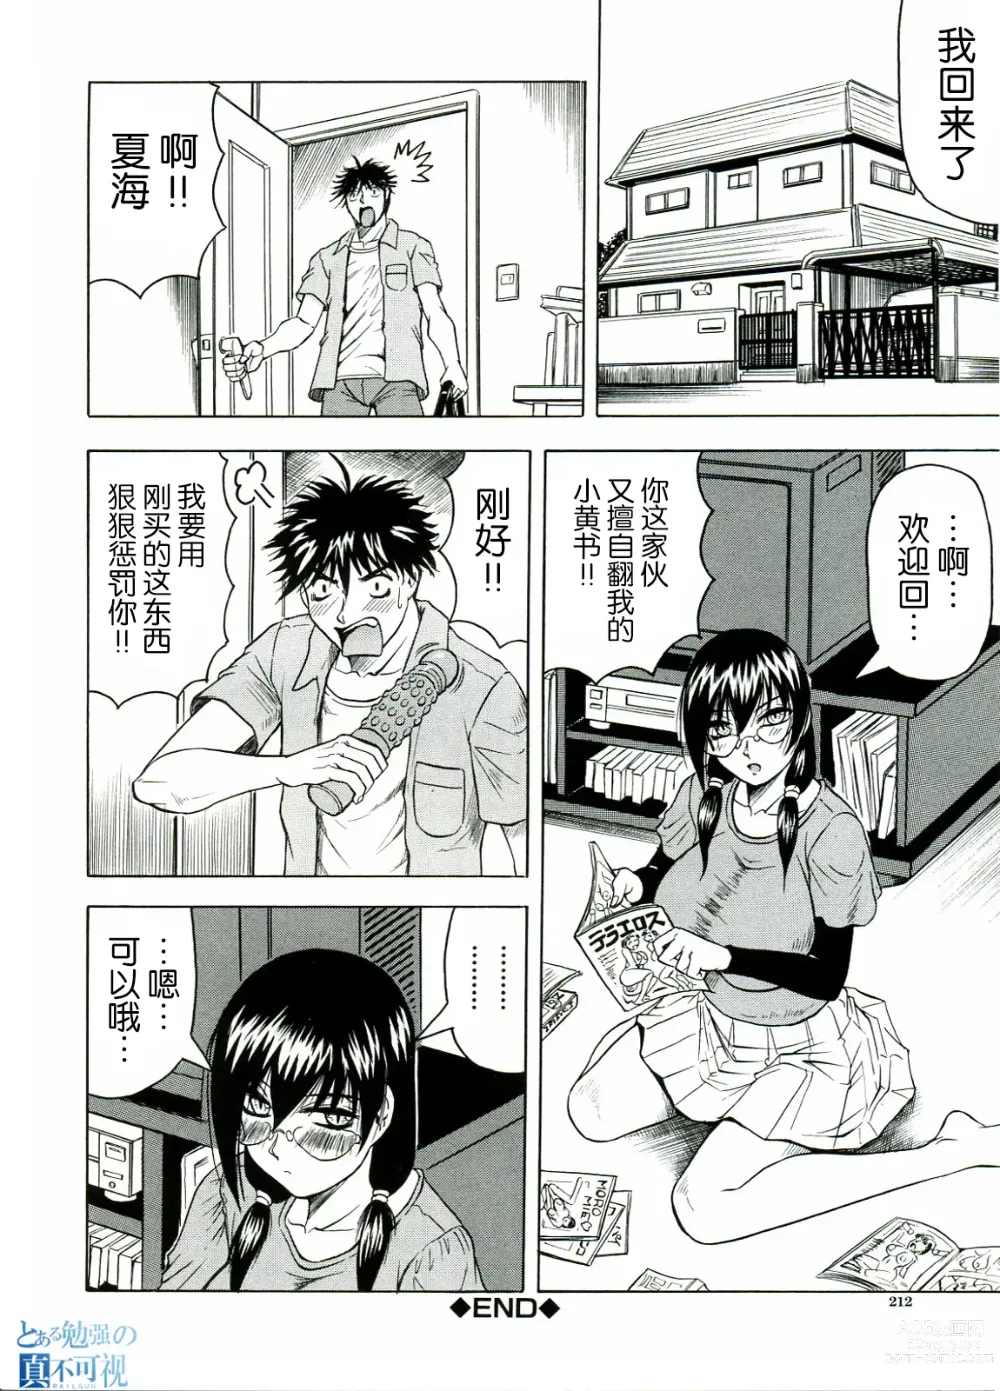 Page 212 of manga Tames